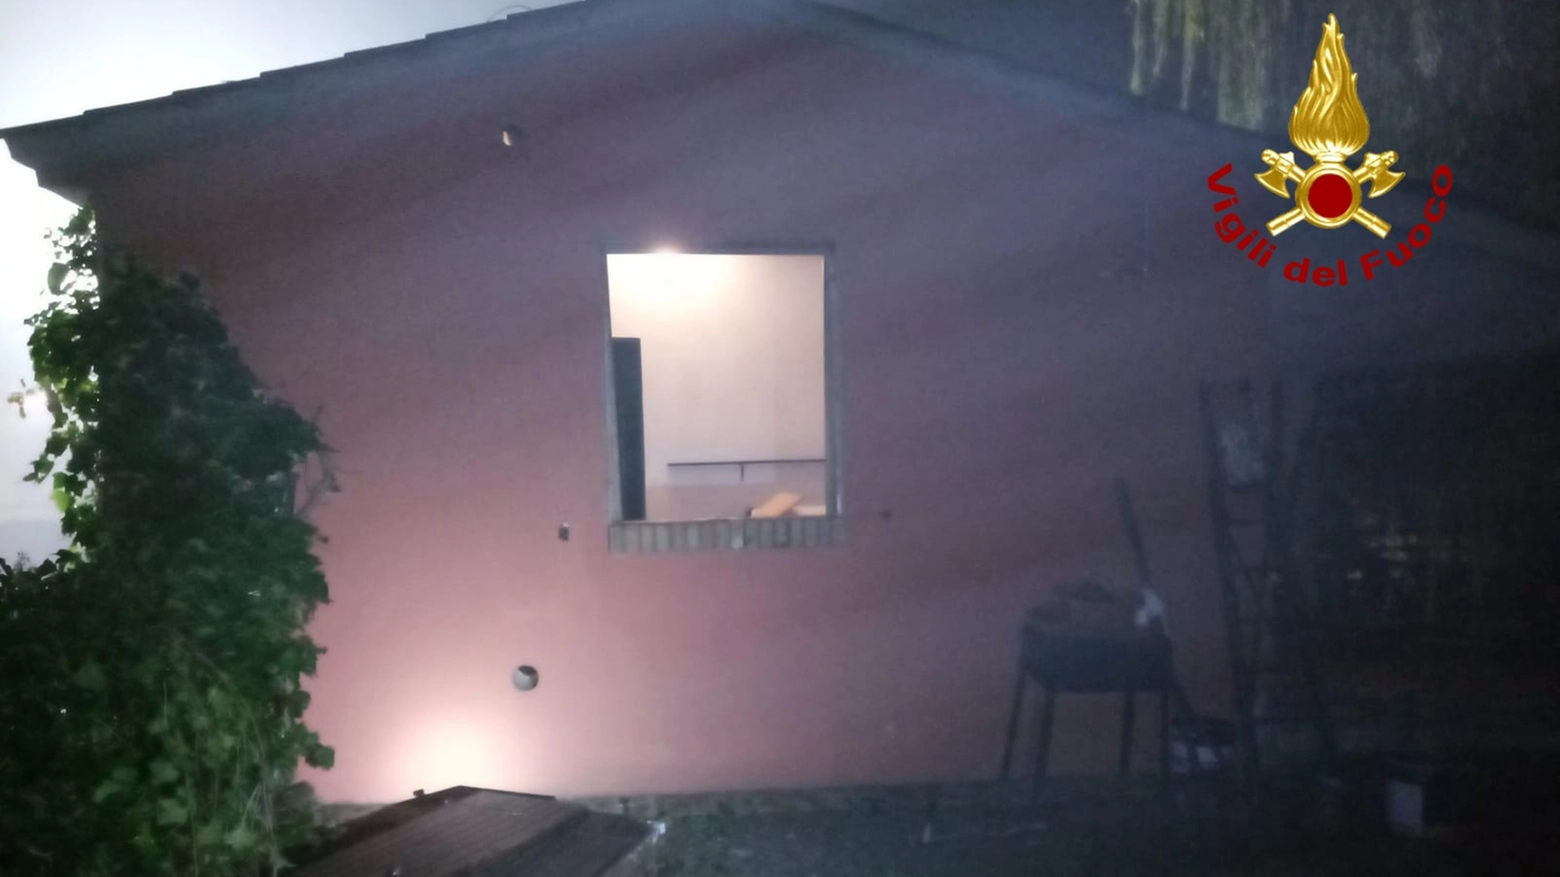 L'esterno della casa dove è avvenuta l'esplosione (foto Vigili del fuoco)